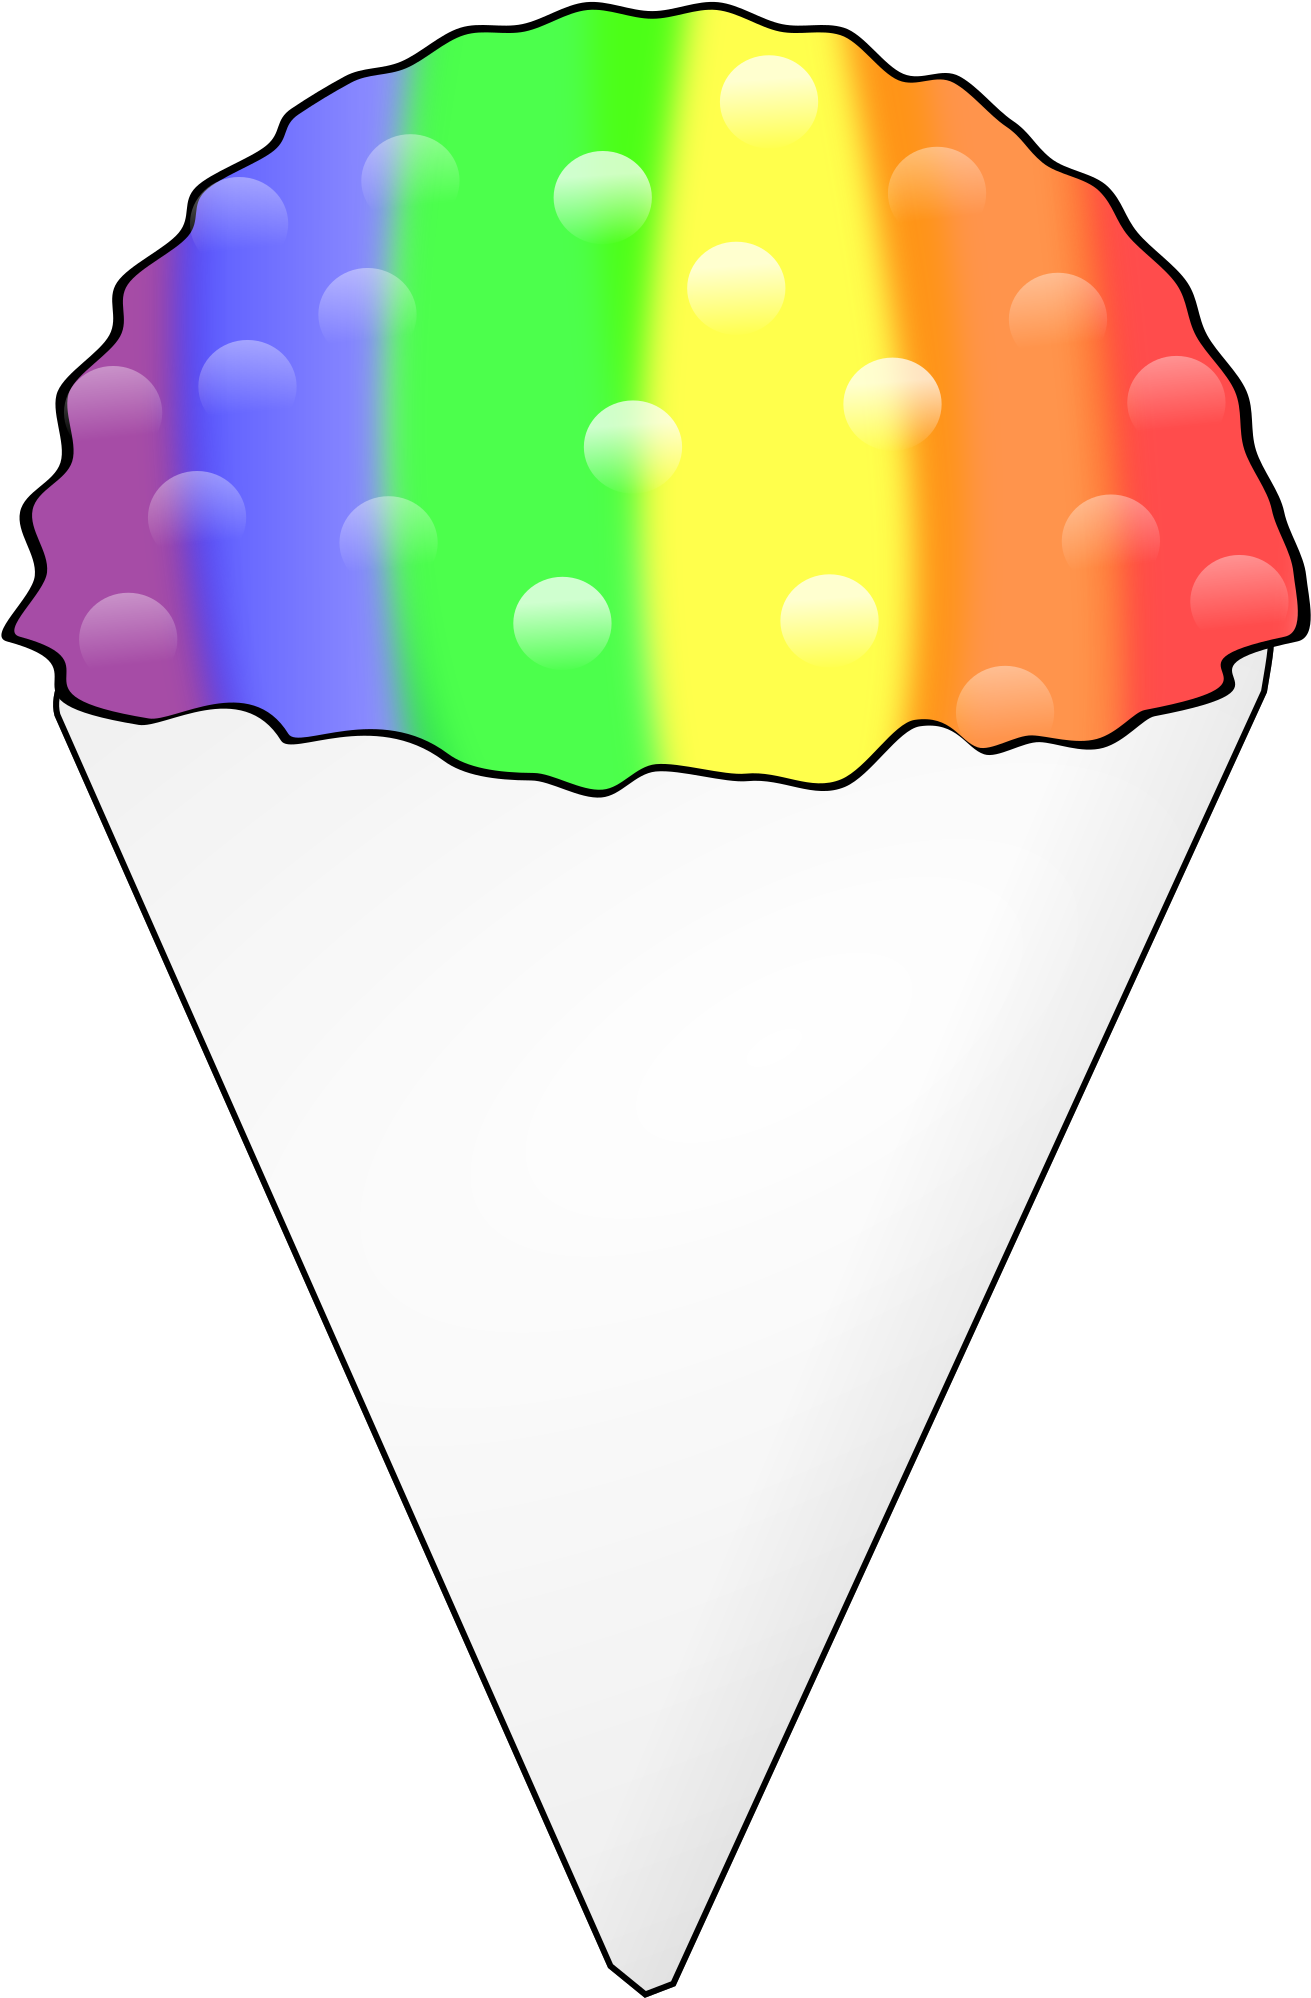 Shaved Ice - Ice Cream (2400x2400)